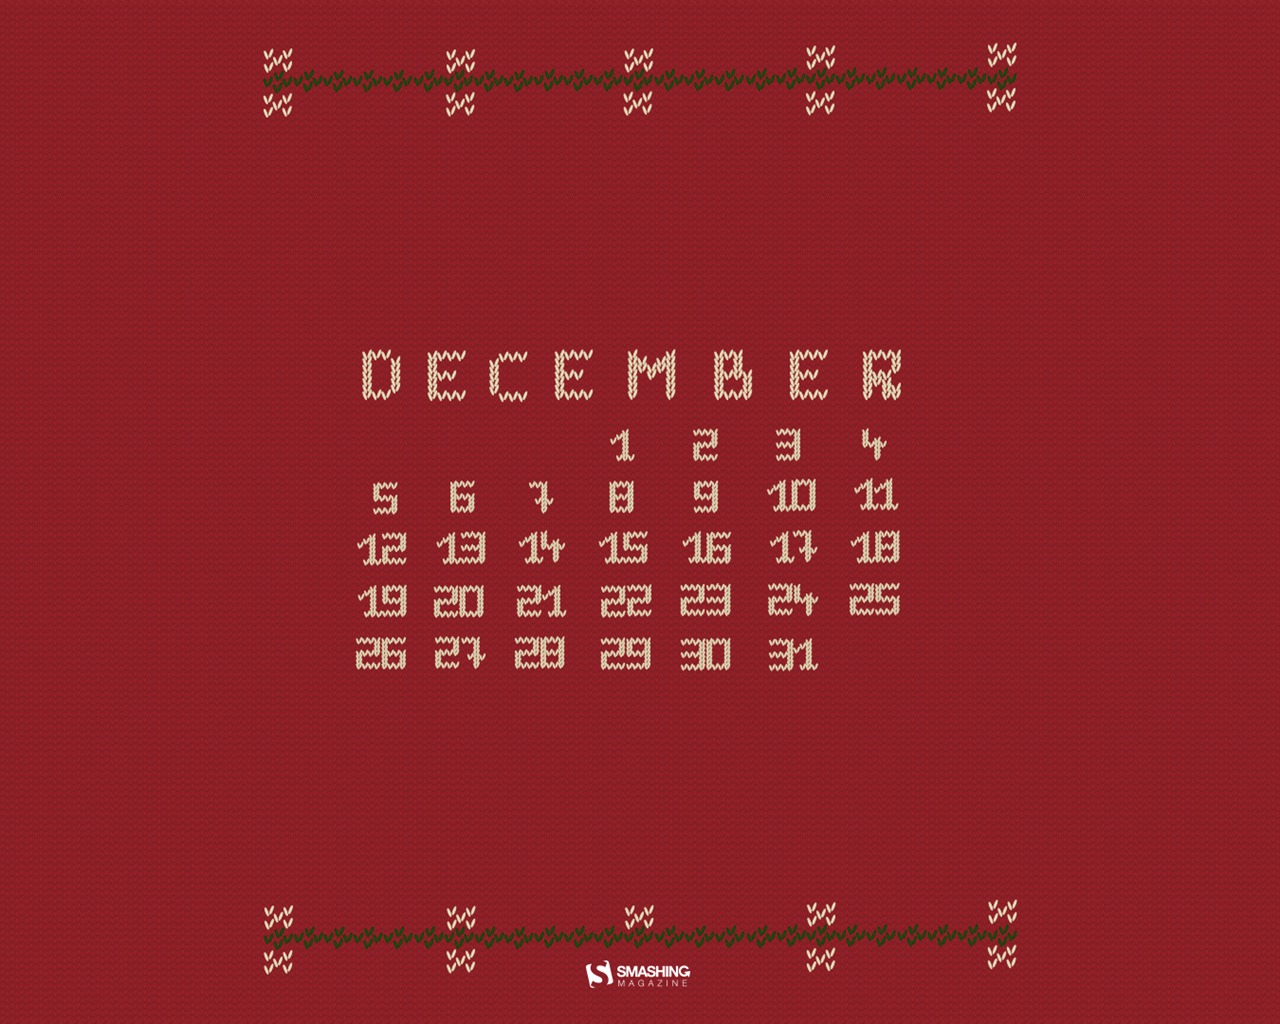 December 2016 Christmas theme calendar wallpaper (2) #12 - 1280x1024